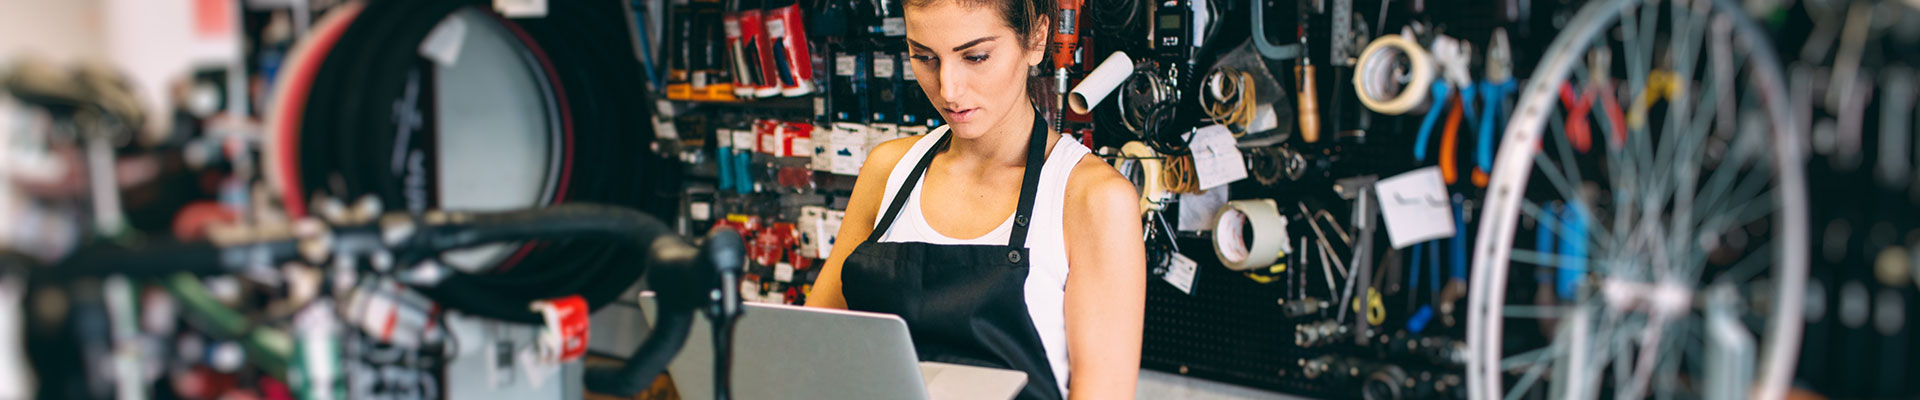 Eine junge Frau arbeitet in einer Fahrradwerkstatt an einem Laptop.